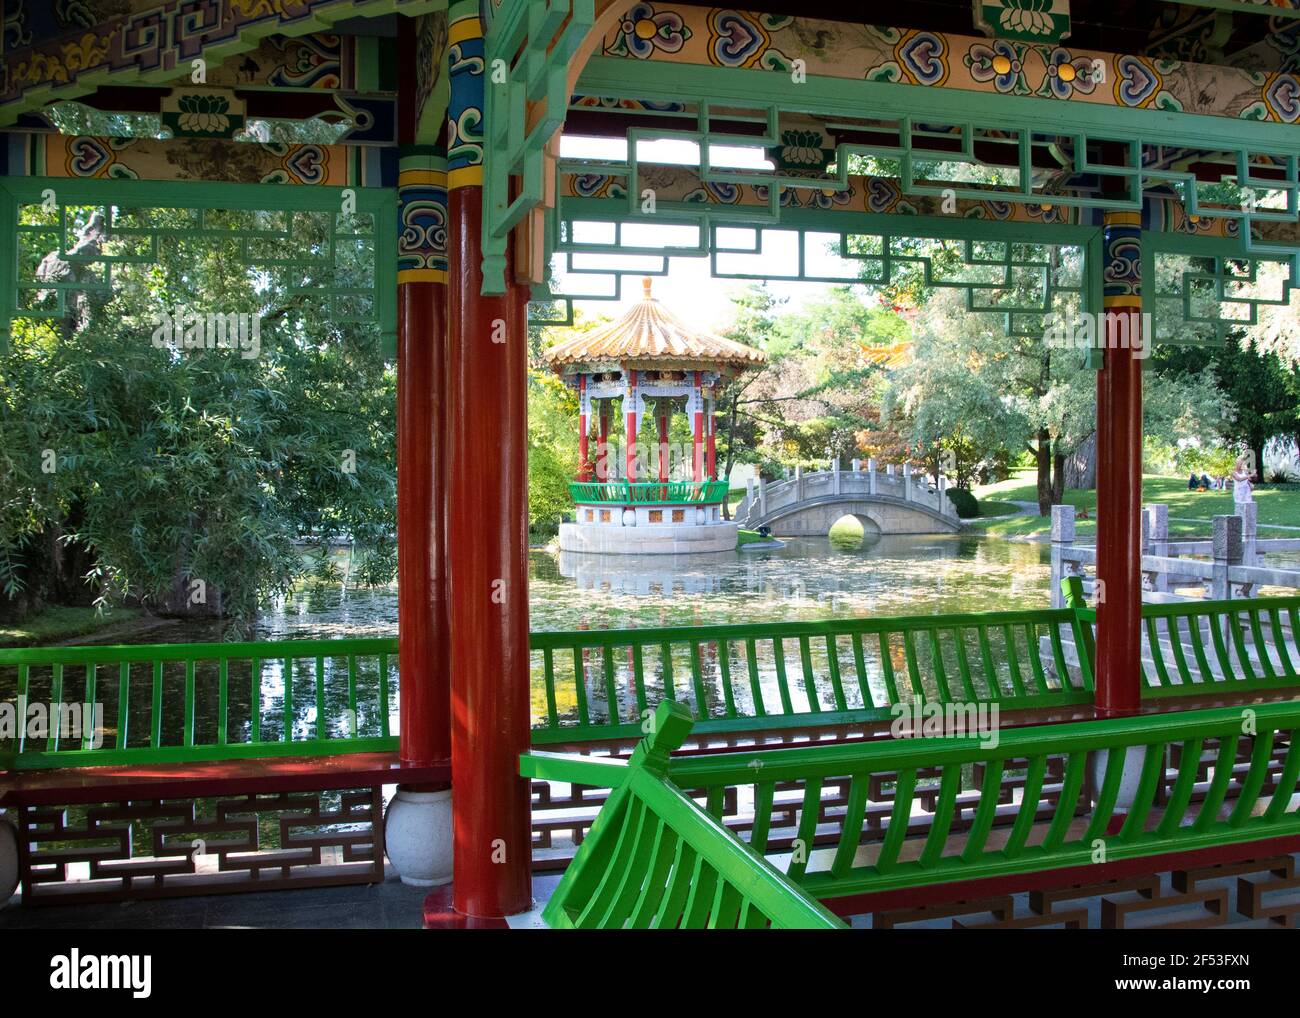 Giardino cinese nella città svizzera di Zürich, si trova nel quartiere di Seefeld, è un regalo cinese partner città Kunming. Foto Stock